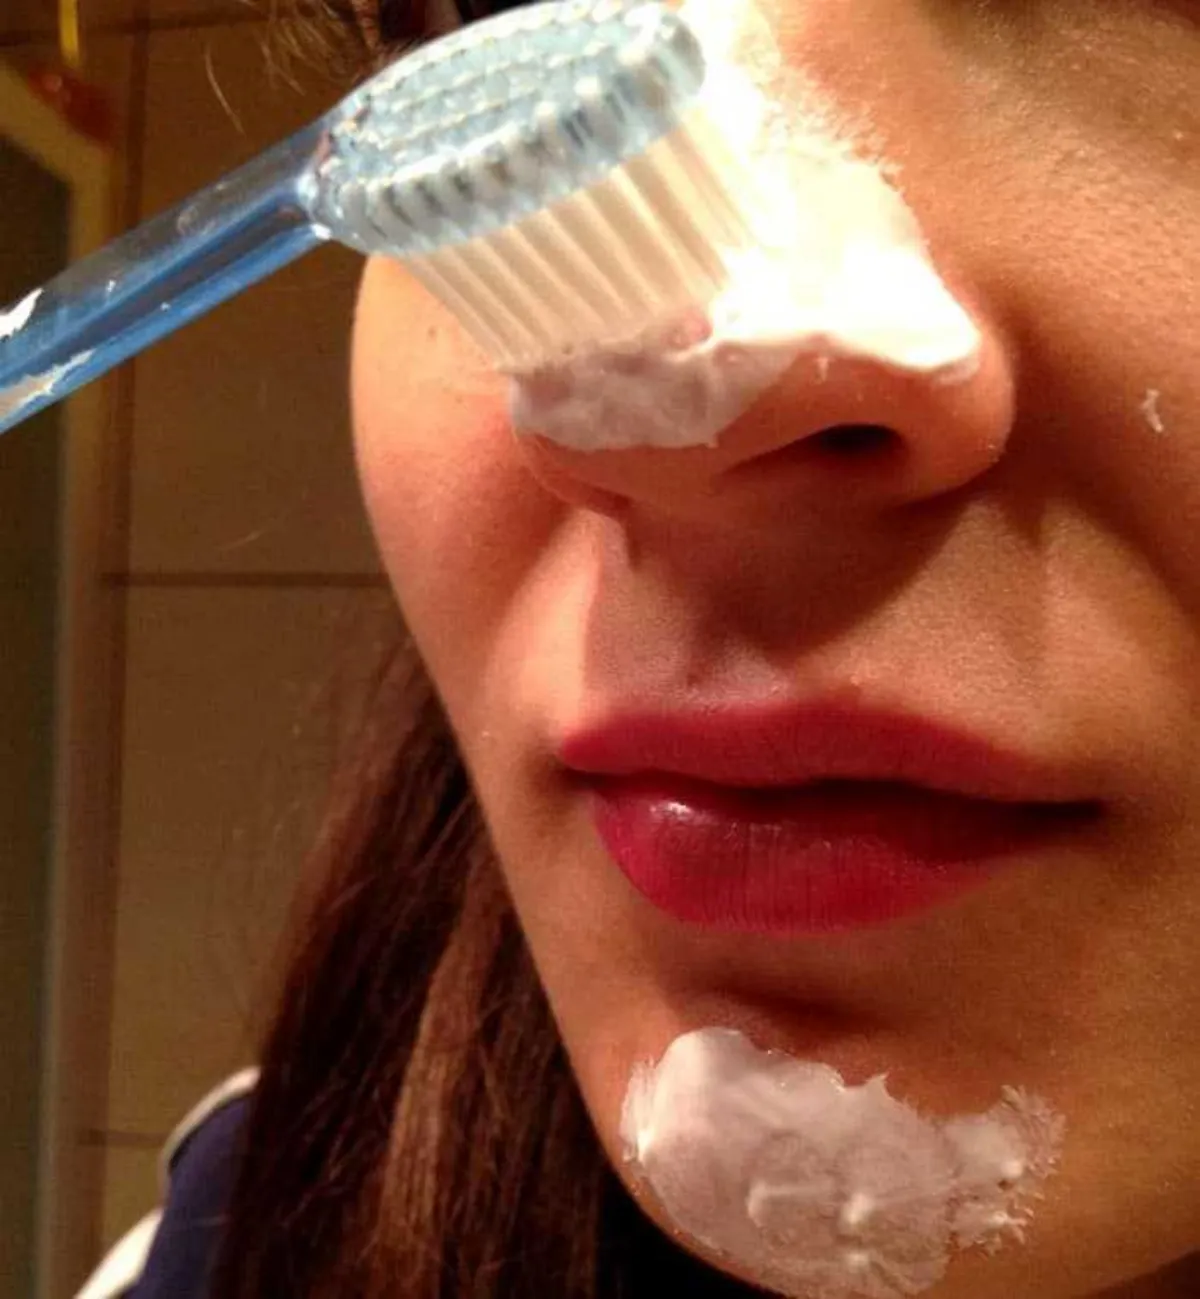 dentifrice pour déboucher le nez femme audentifrice surlenez